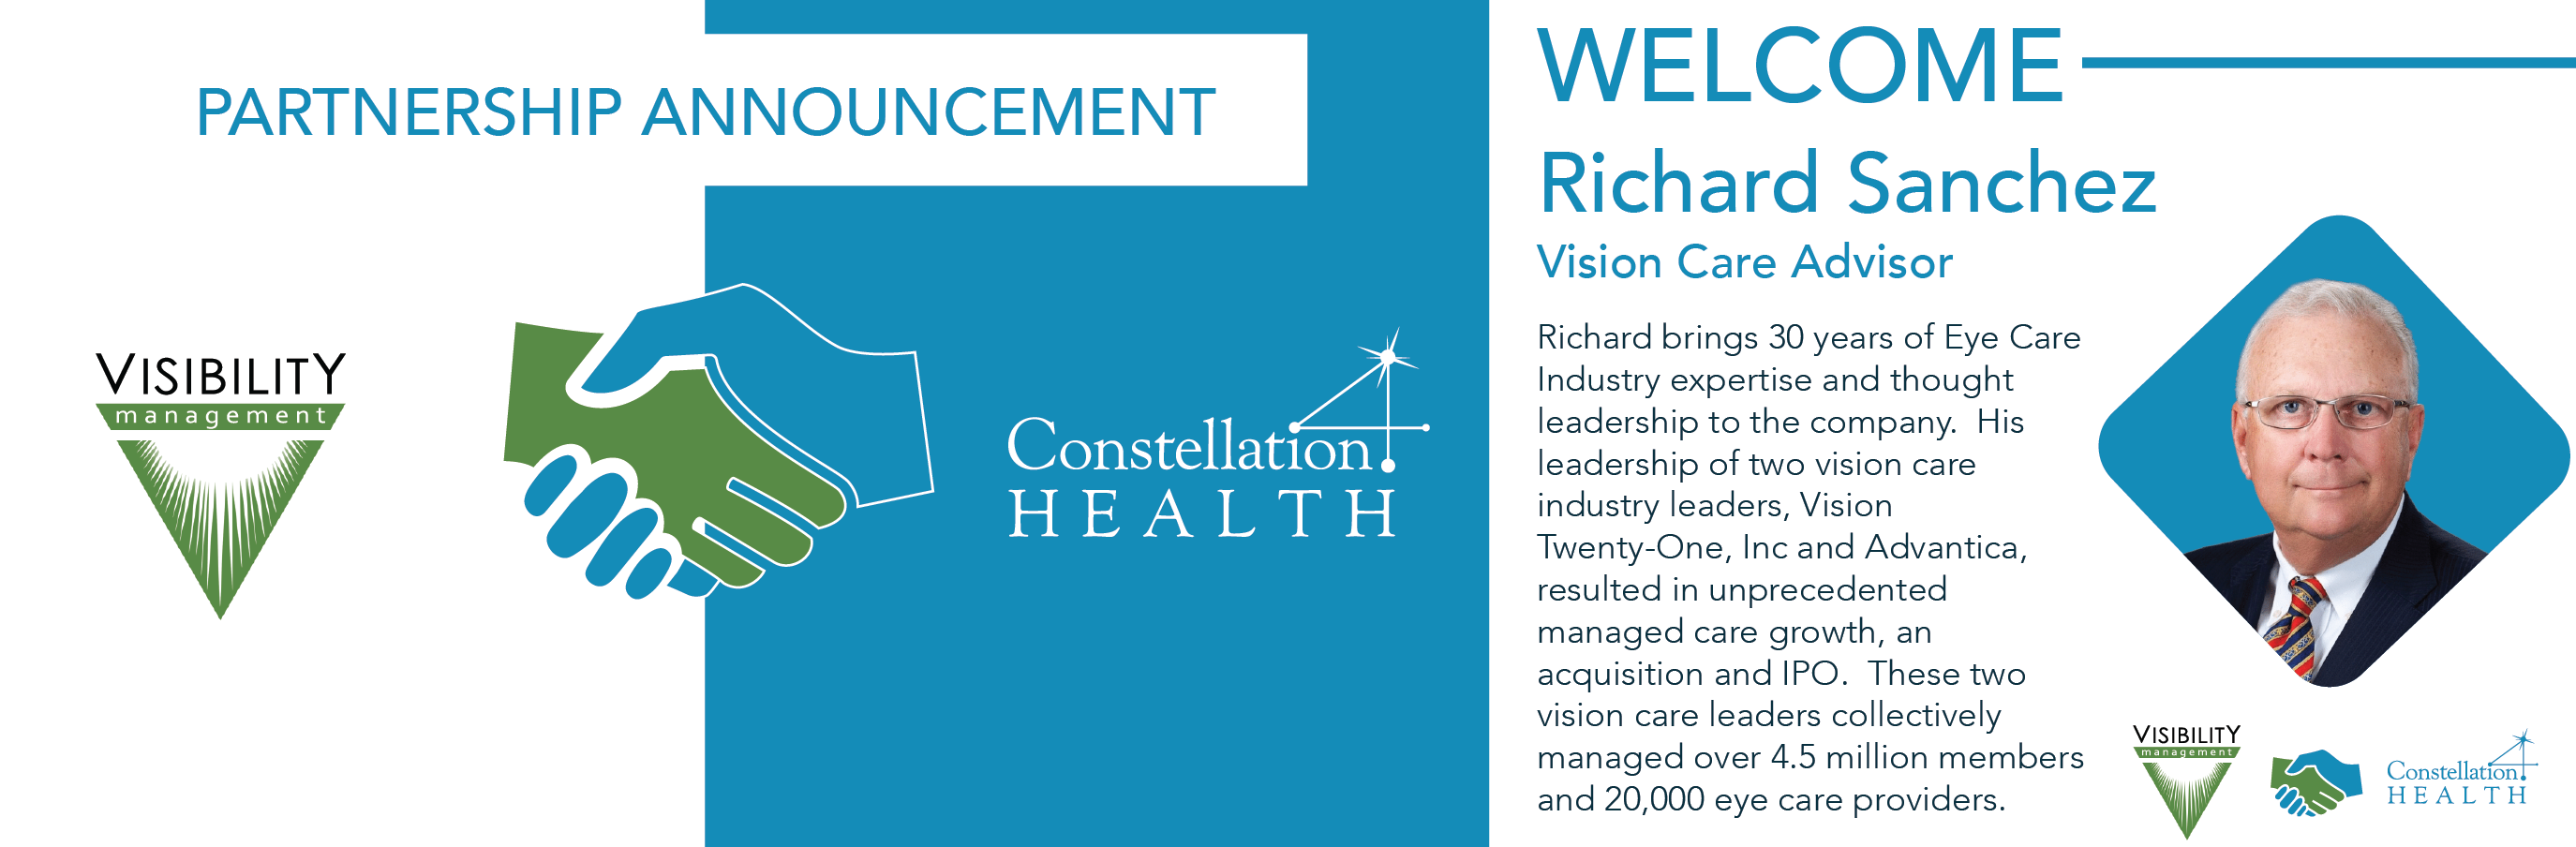 Partnership Announcement | Visibility Management | Richard Sanchez | Vision Care Advisor